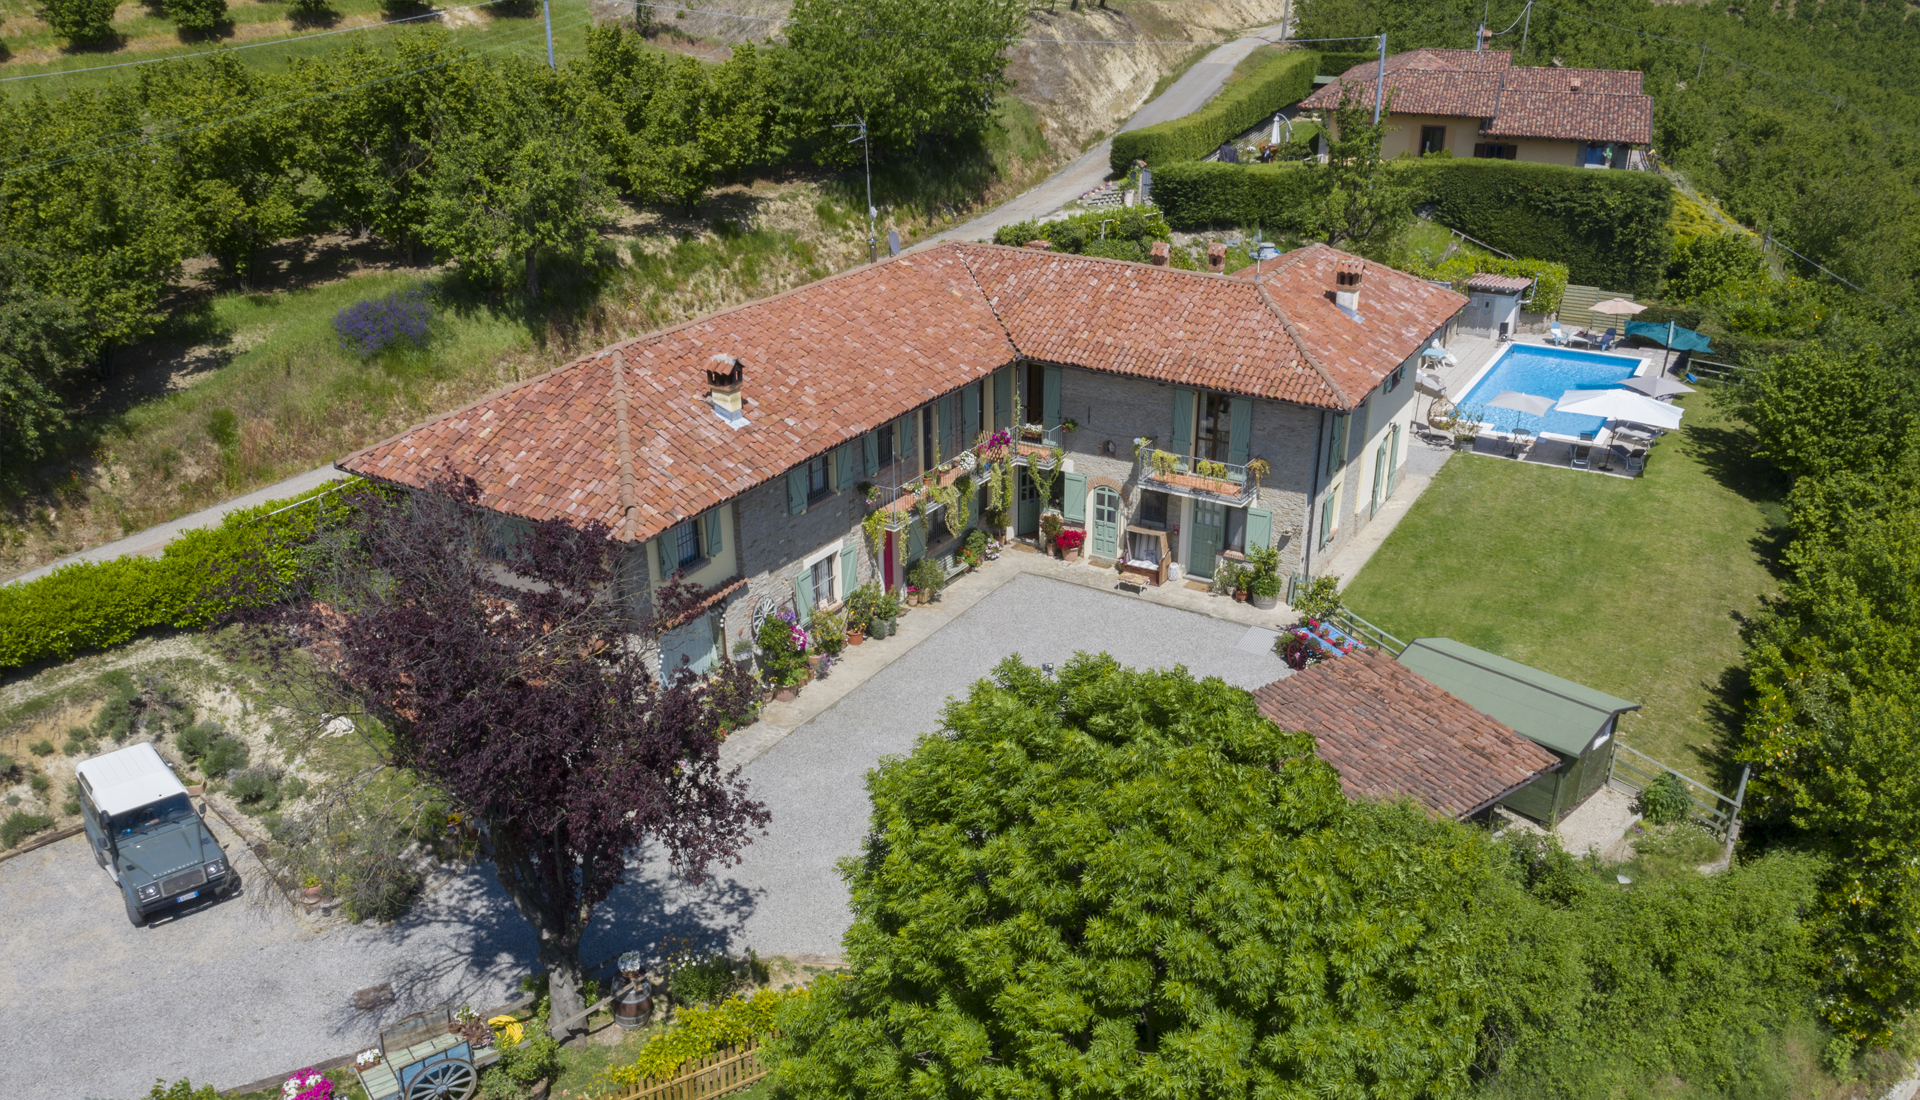 Una veduta aerea de La Lepre Danzante, una guest house a conduzione familiare in stile B&B vicino ad Alba.